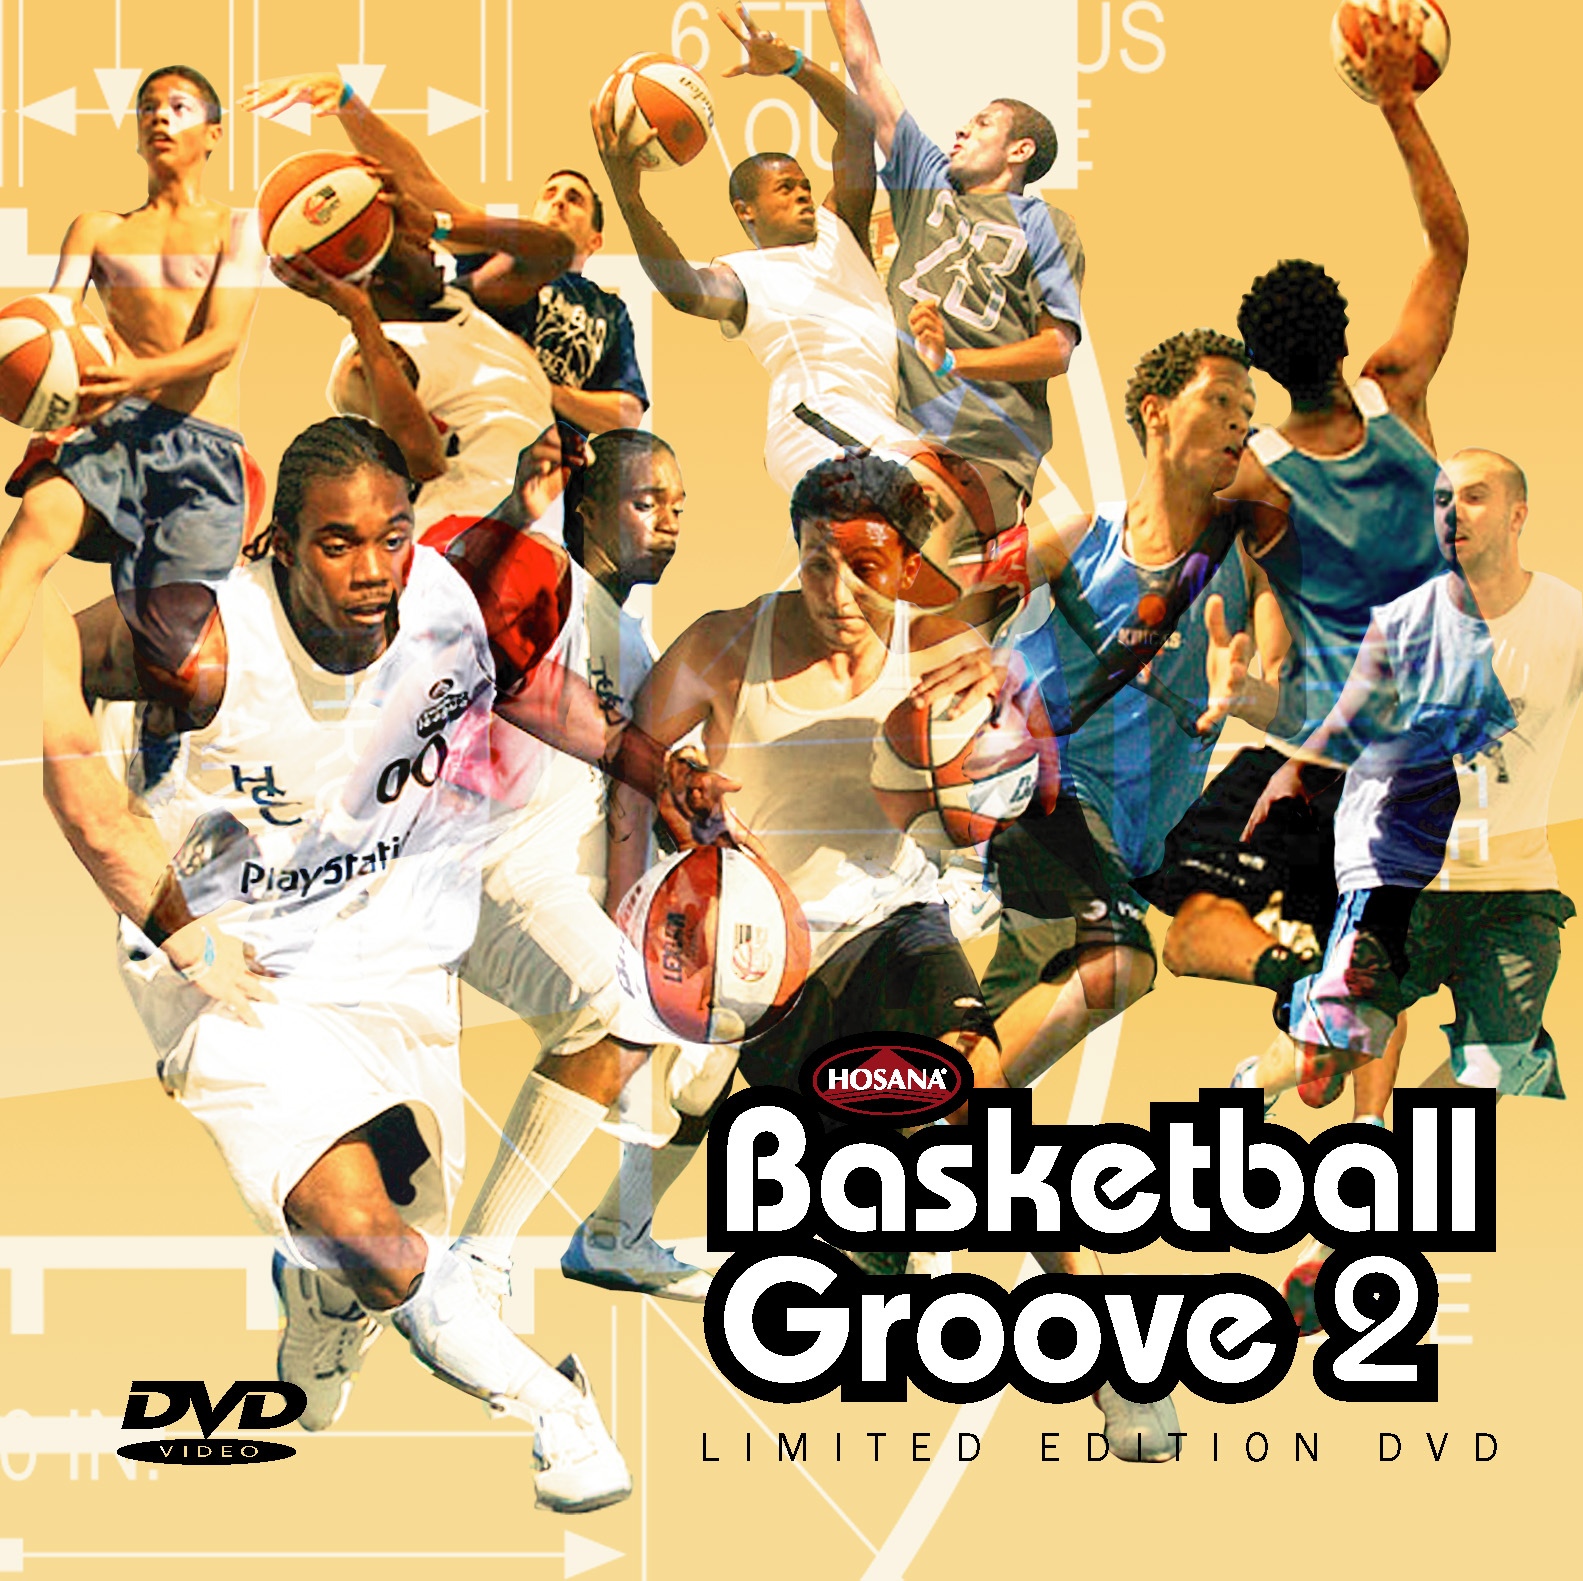 Hosana Basketball Groove